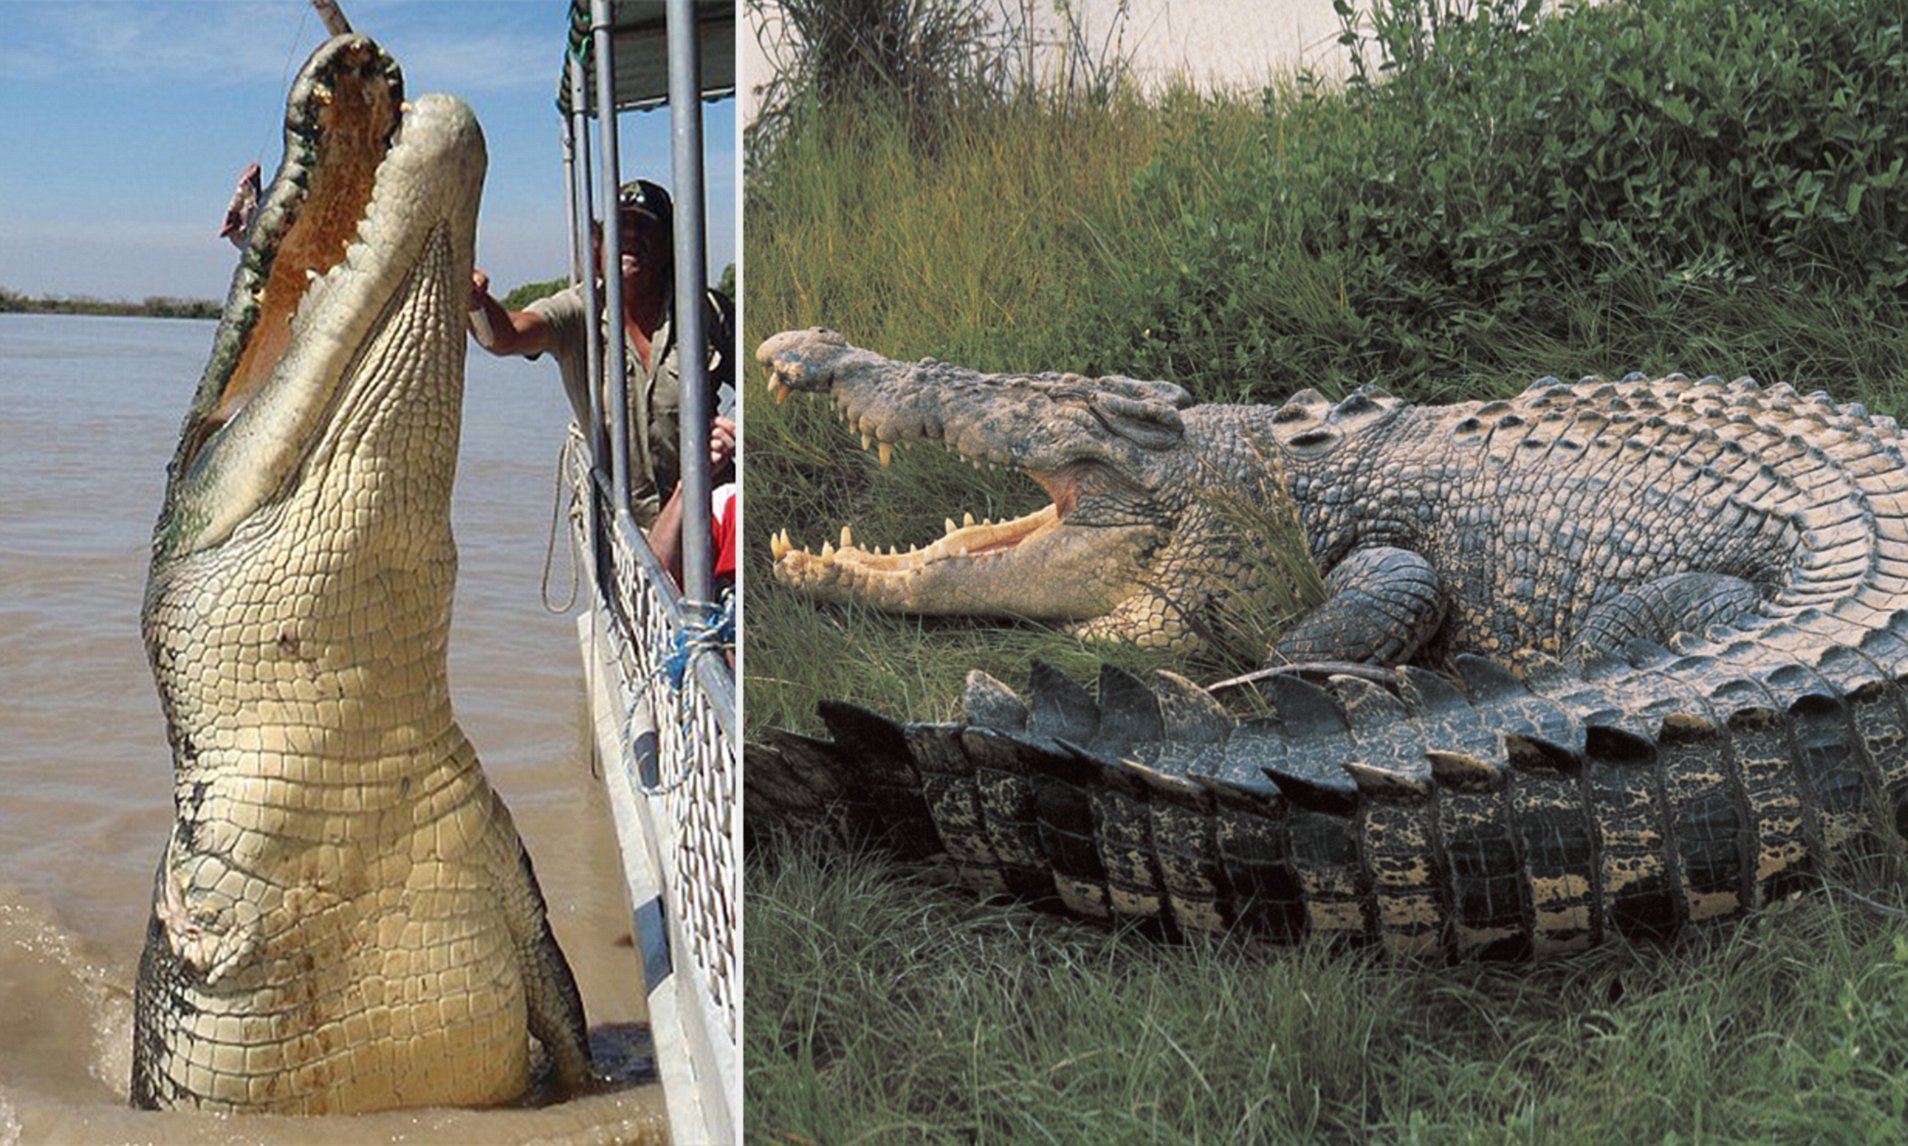 Виды крокодилов: описание, особенности и среда обитания